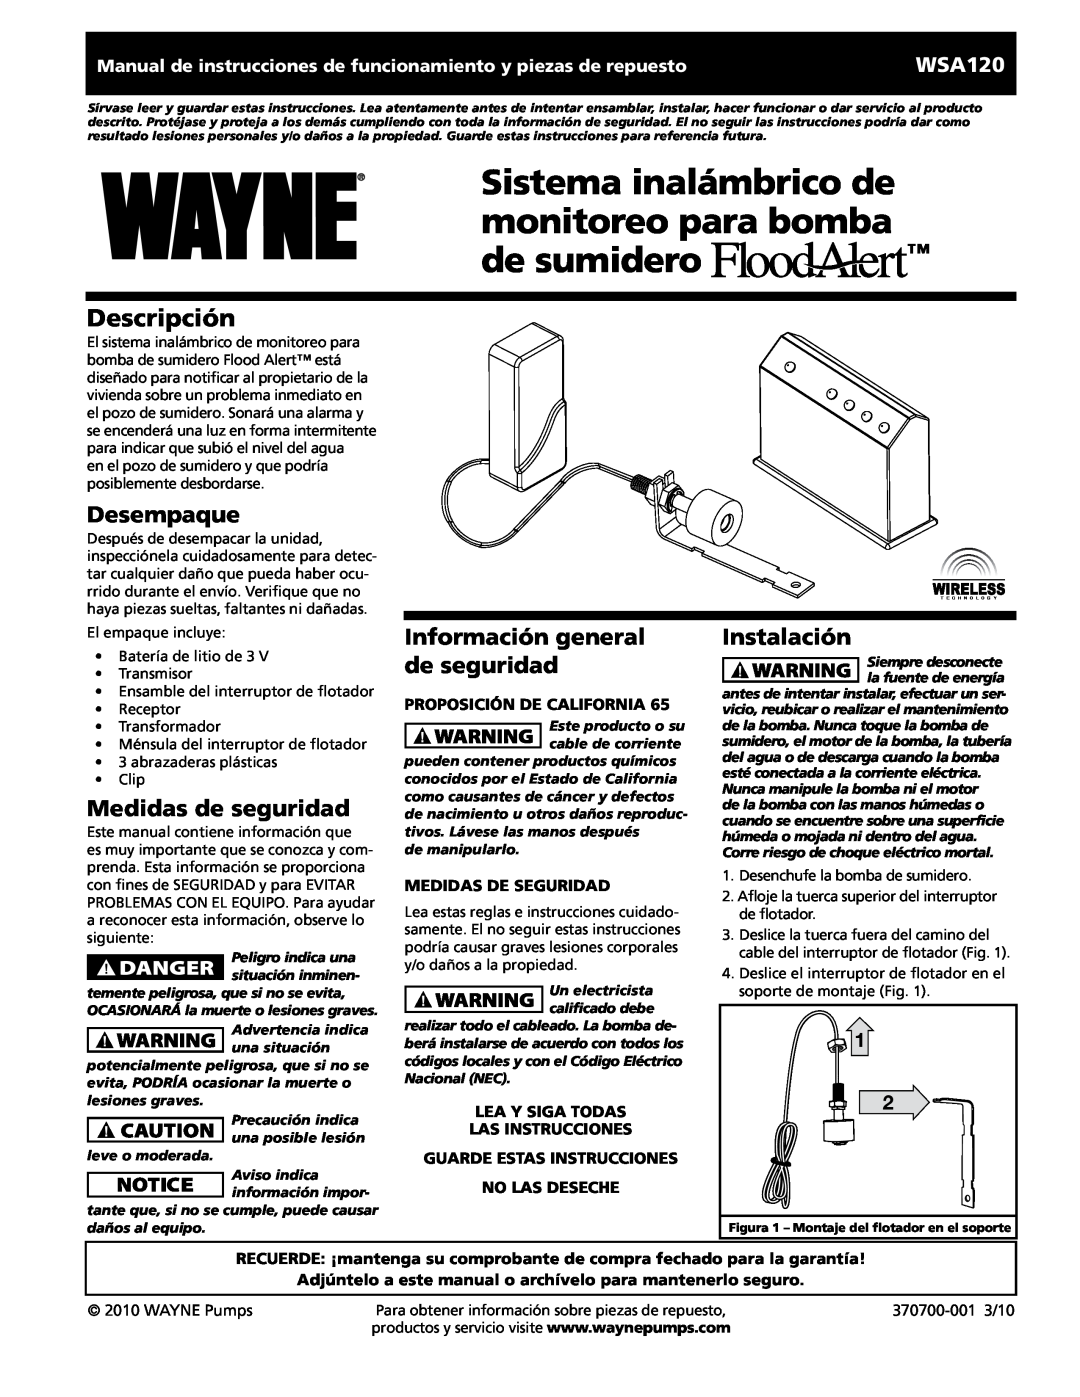 Wayne 370700-001 Sistema inalámbrico de monitoreo para bomba, de sumidero, Desempaque, Medidas de seguridad, Instalación 